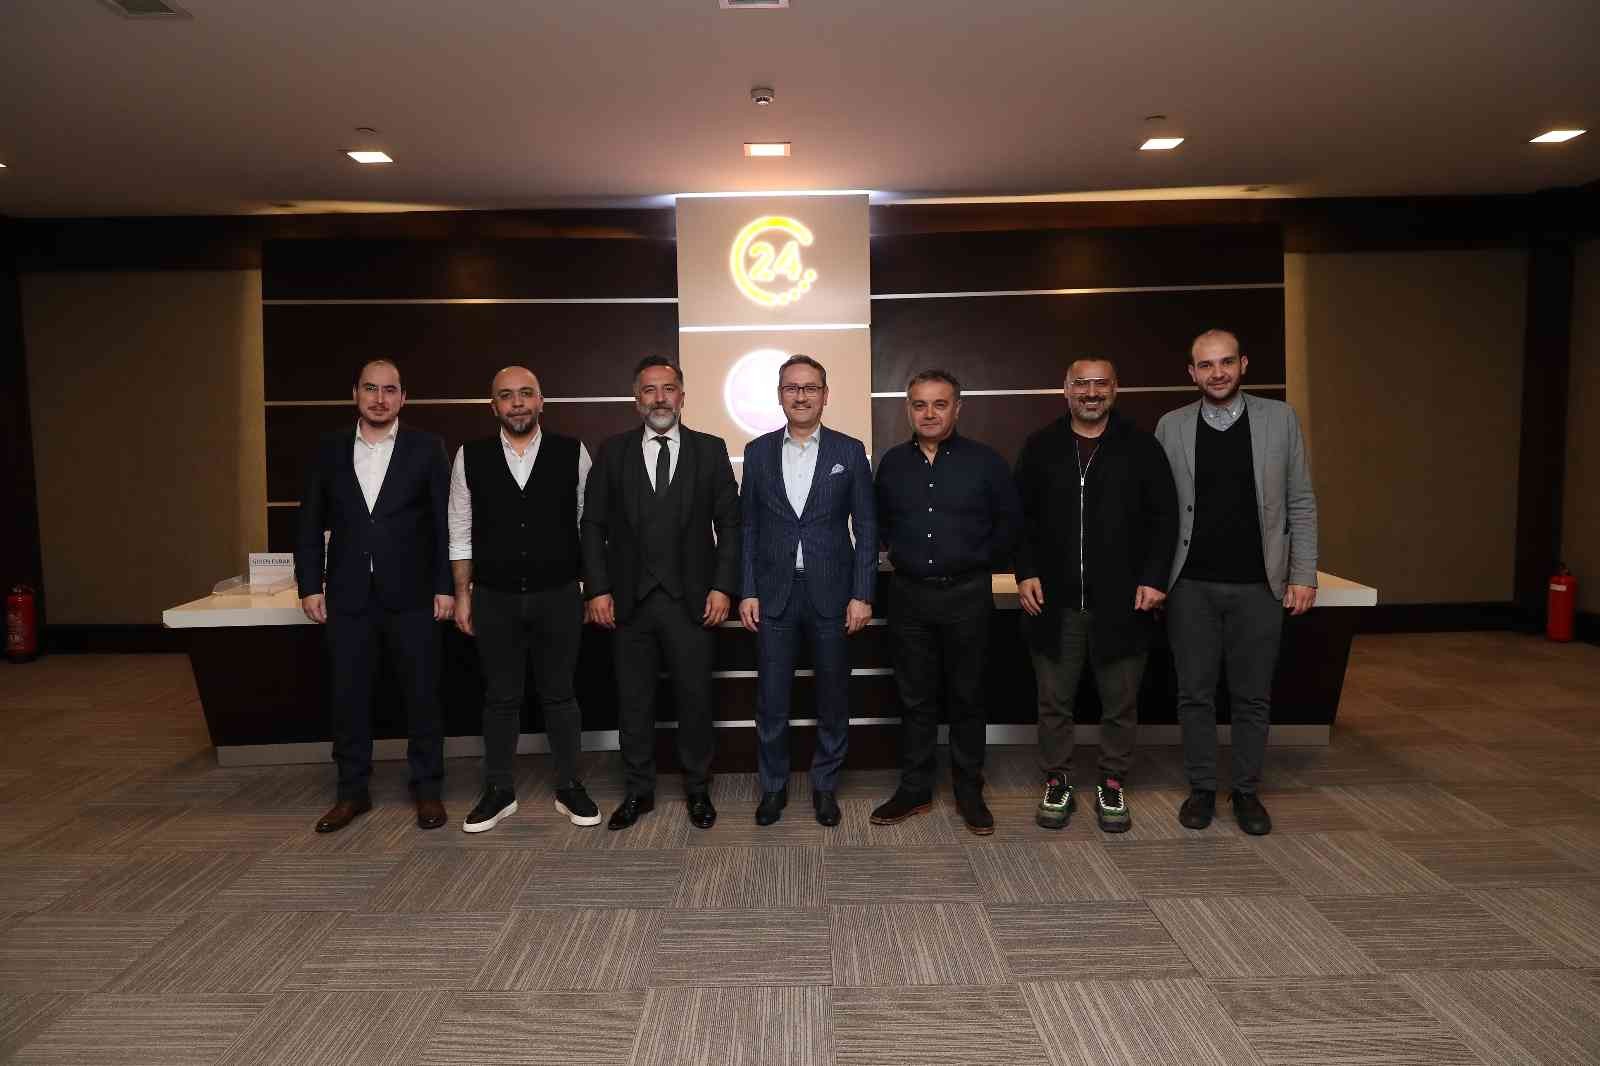 Başakşehir’in “5 yıldızlı” akademisi Yeni Medya Akademi’de yeni bir dönem başladı. Başakşehir Belediyesi ve medya sektörünün köklü şirketlerinden ...